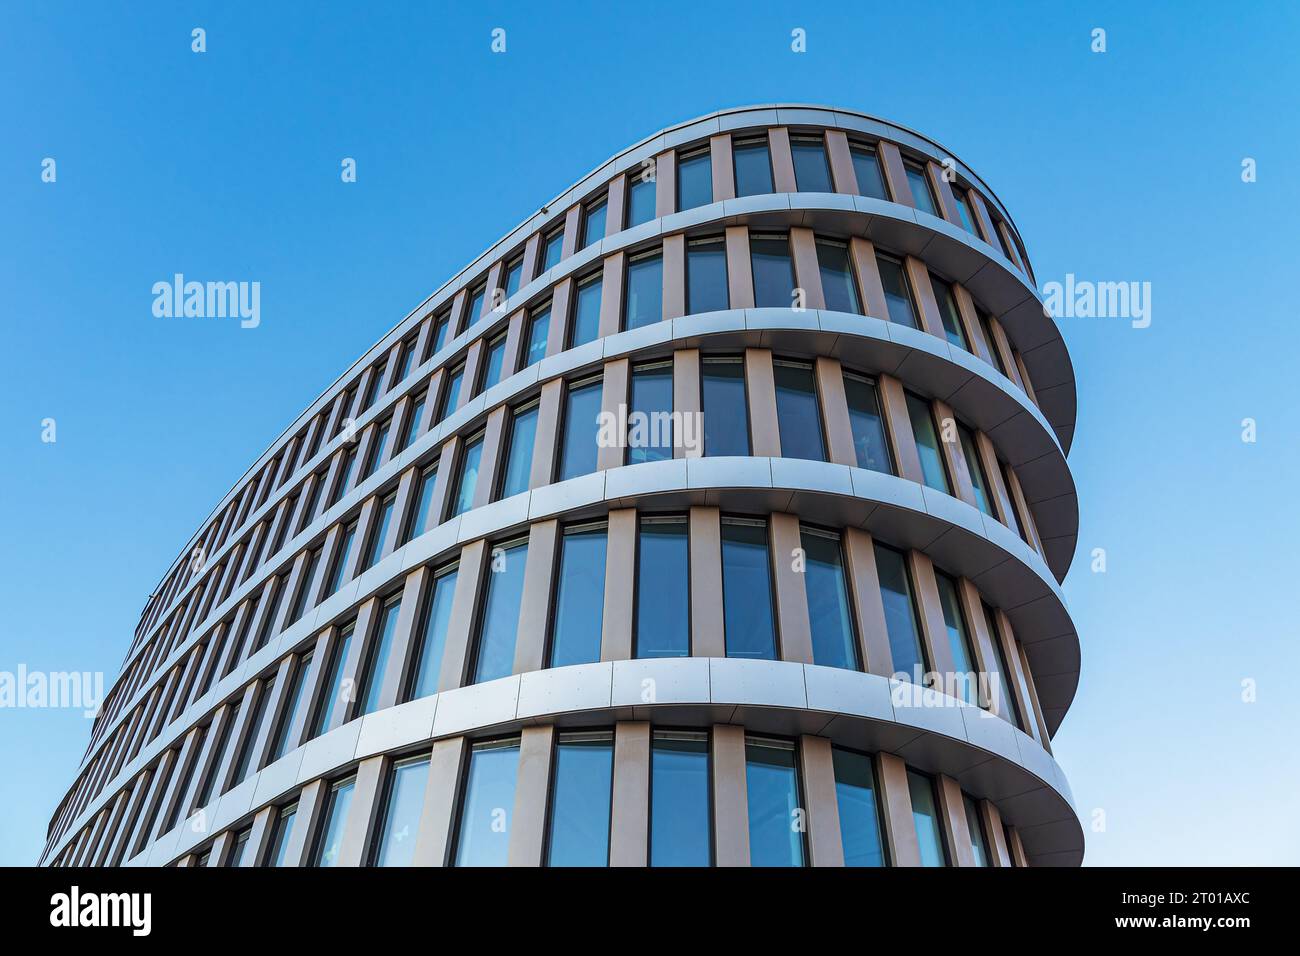 Dettaglio di un edificio moderno presso il porto cittadino nella città anseatica di Rostock, Germania. Foto Stock